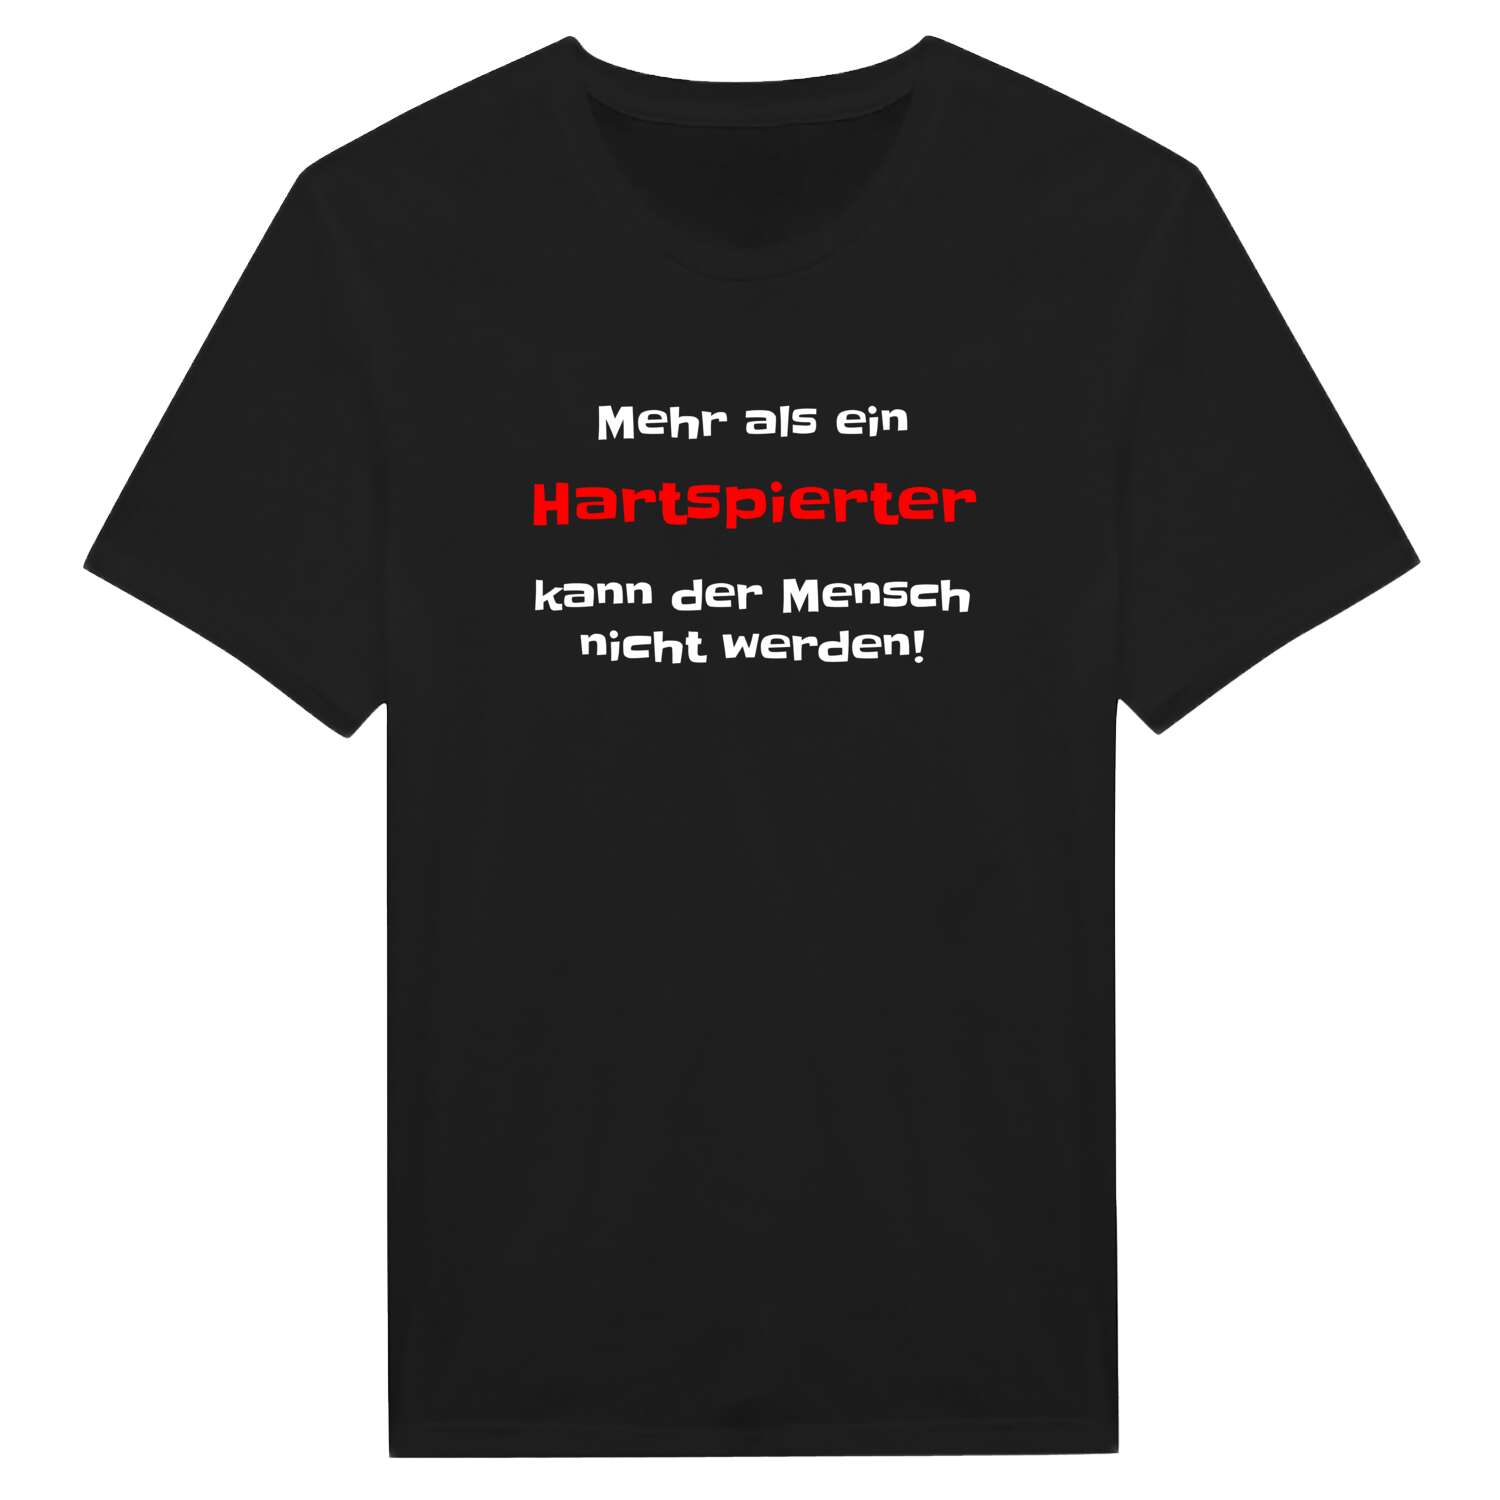 Hartspiert T-Shirt »Mehr als ein«